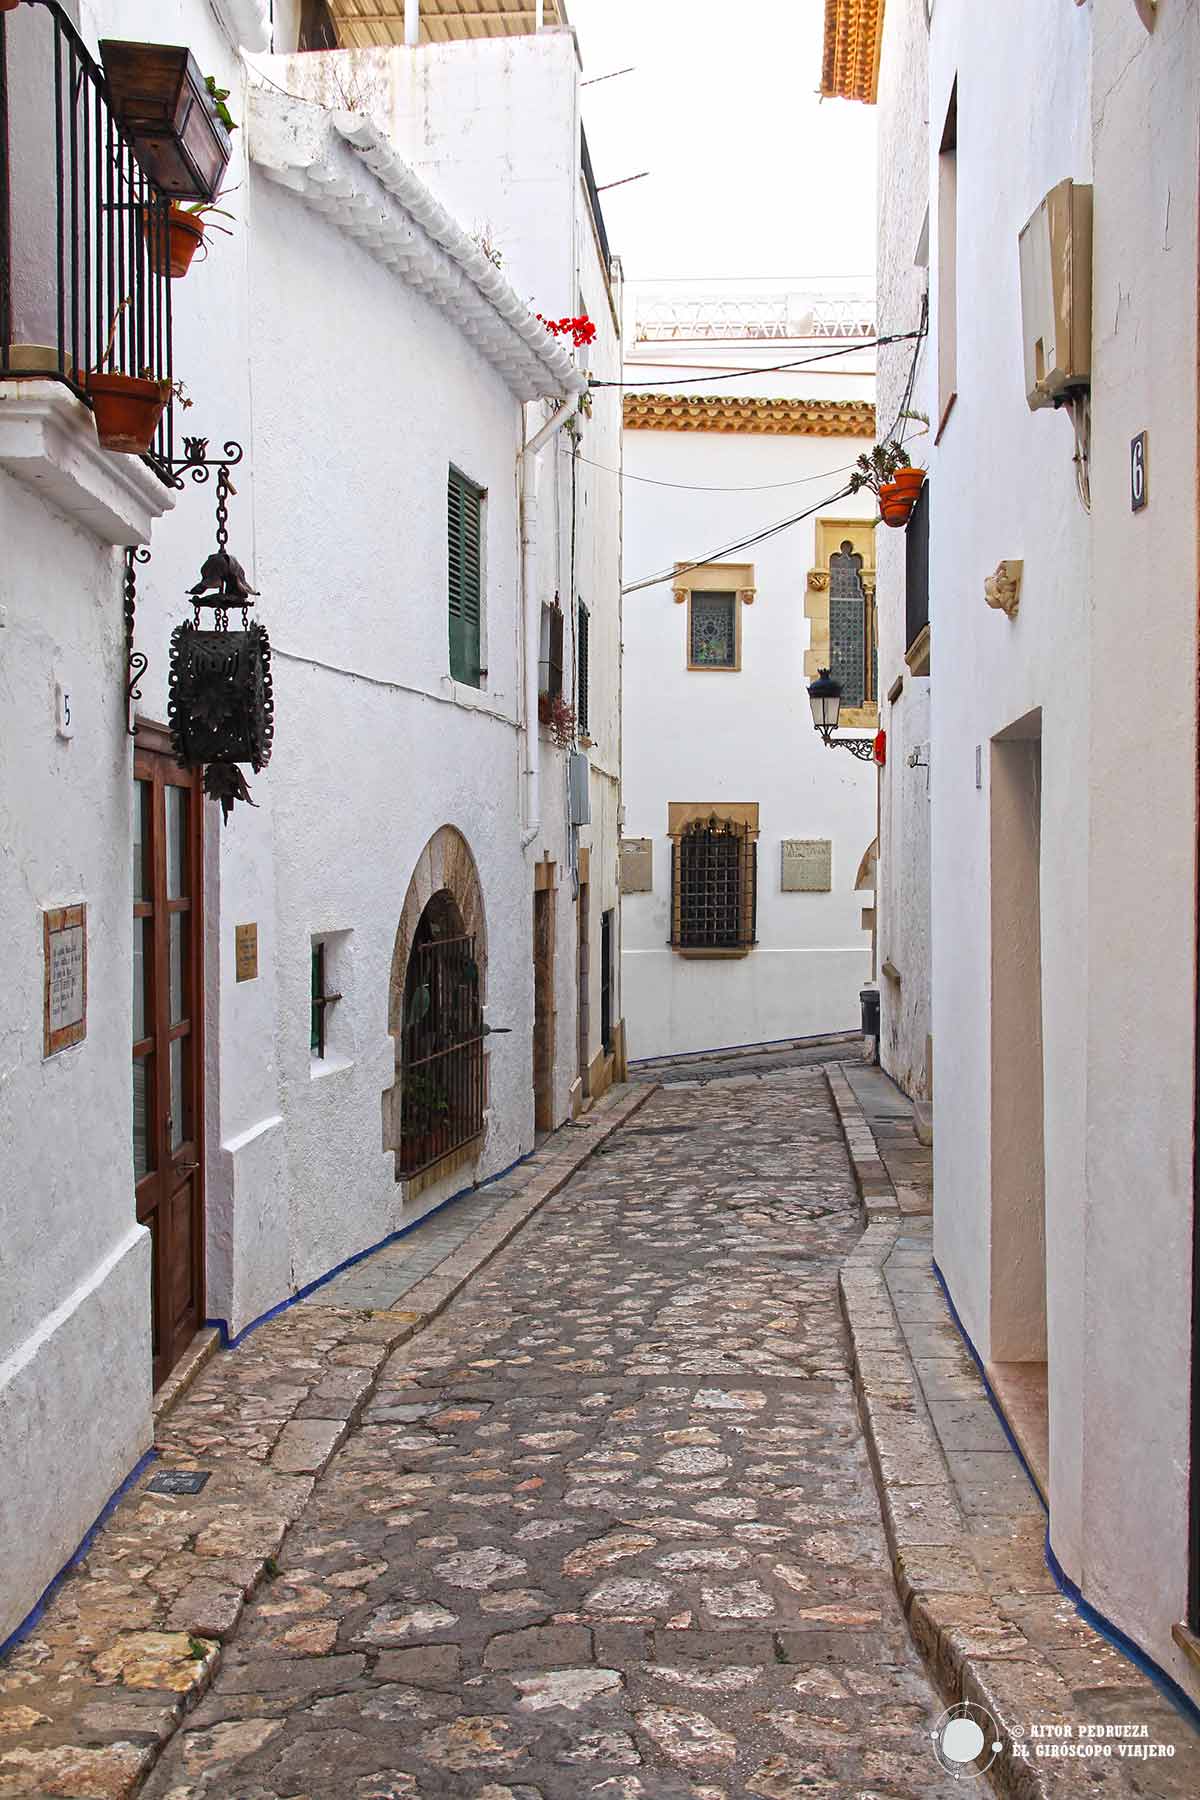 Las callejuelas medievales de Sitges se mantienen casi intactas